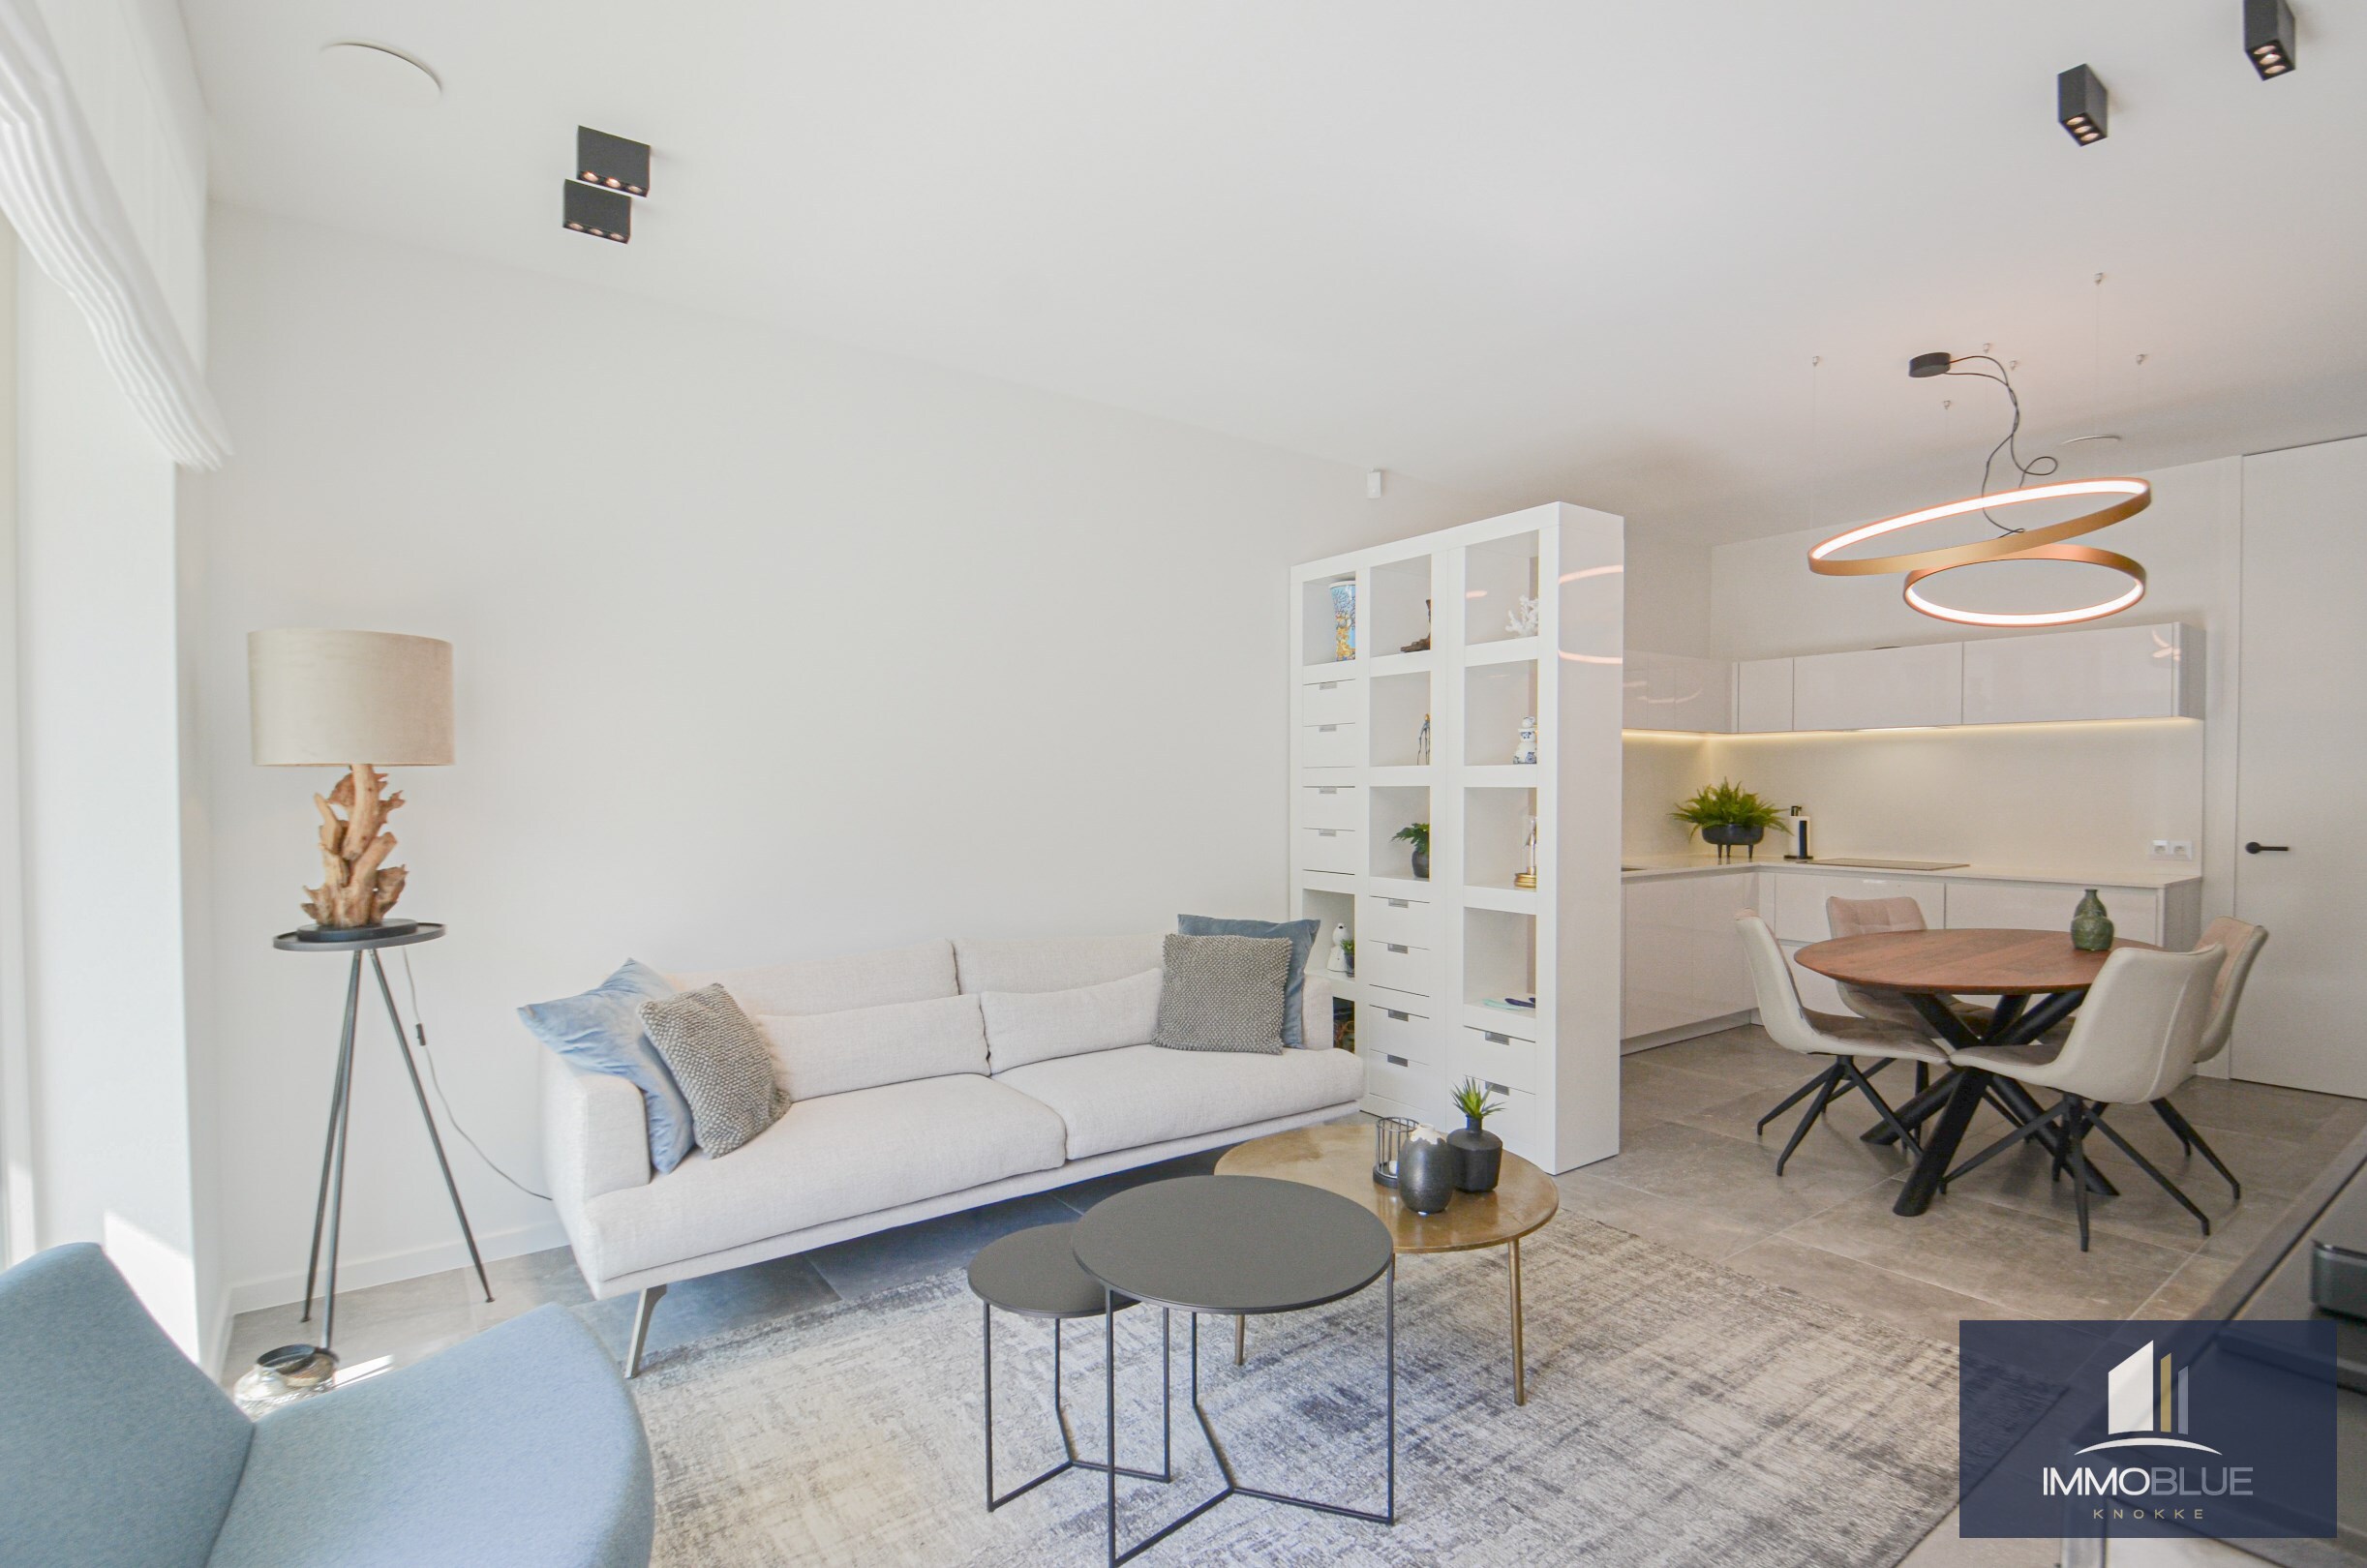 Subliem, luxueus tuinappartement met dubbele garage, rustig gelegen in een standingvolle residentie. 